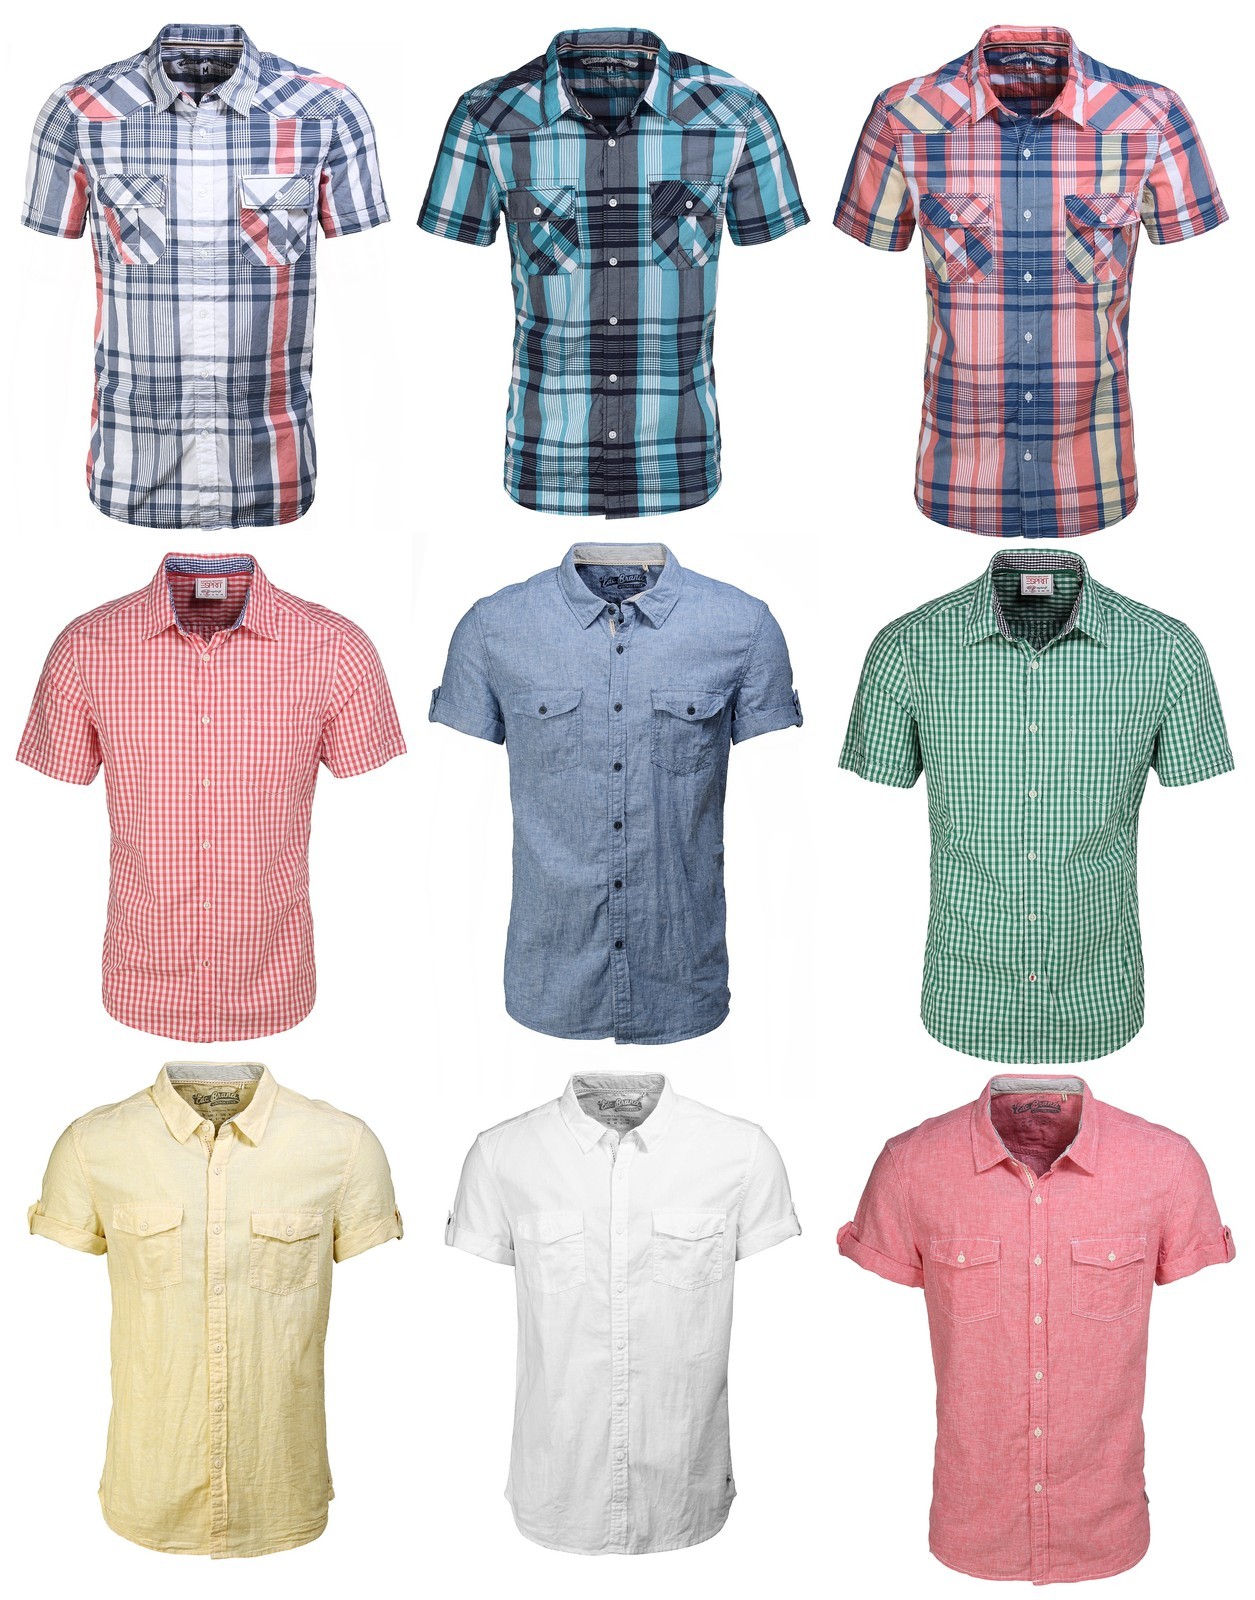 [EBAY] Knaller – wieder da! Esprit Herren Hemden und Esprit Hosen in verschiedenen Farben und Größen für nur 15,58 Euro aus England